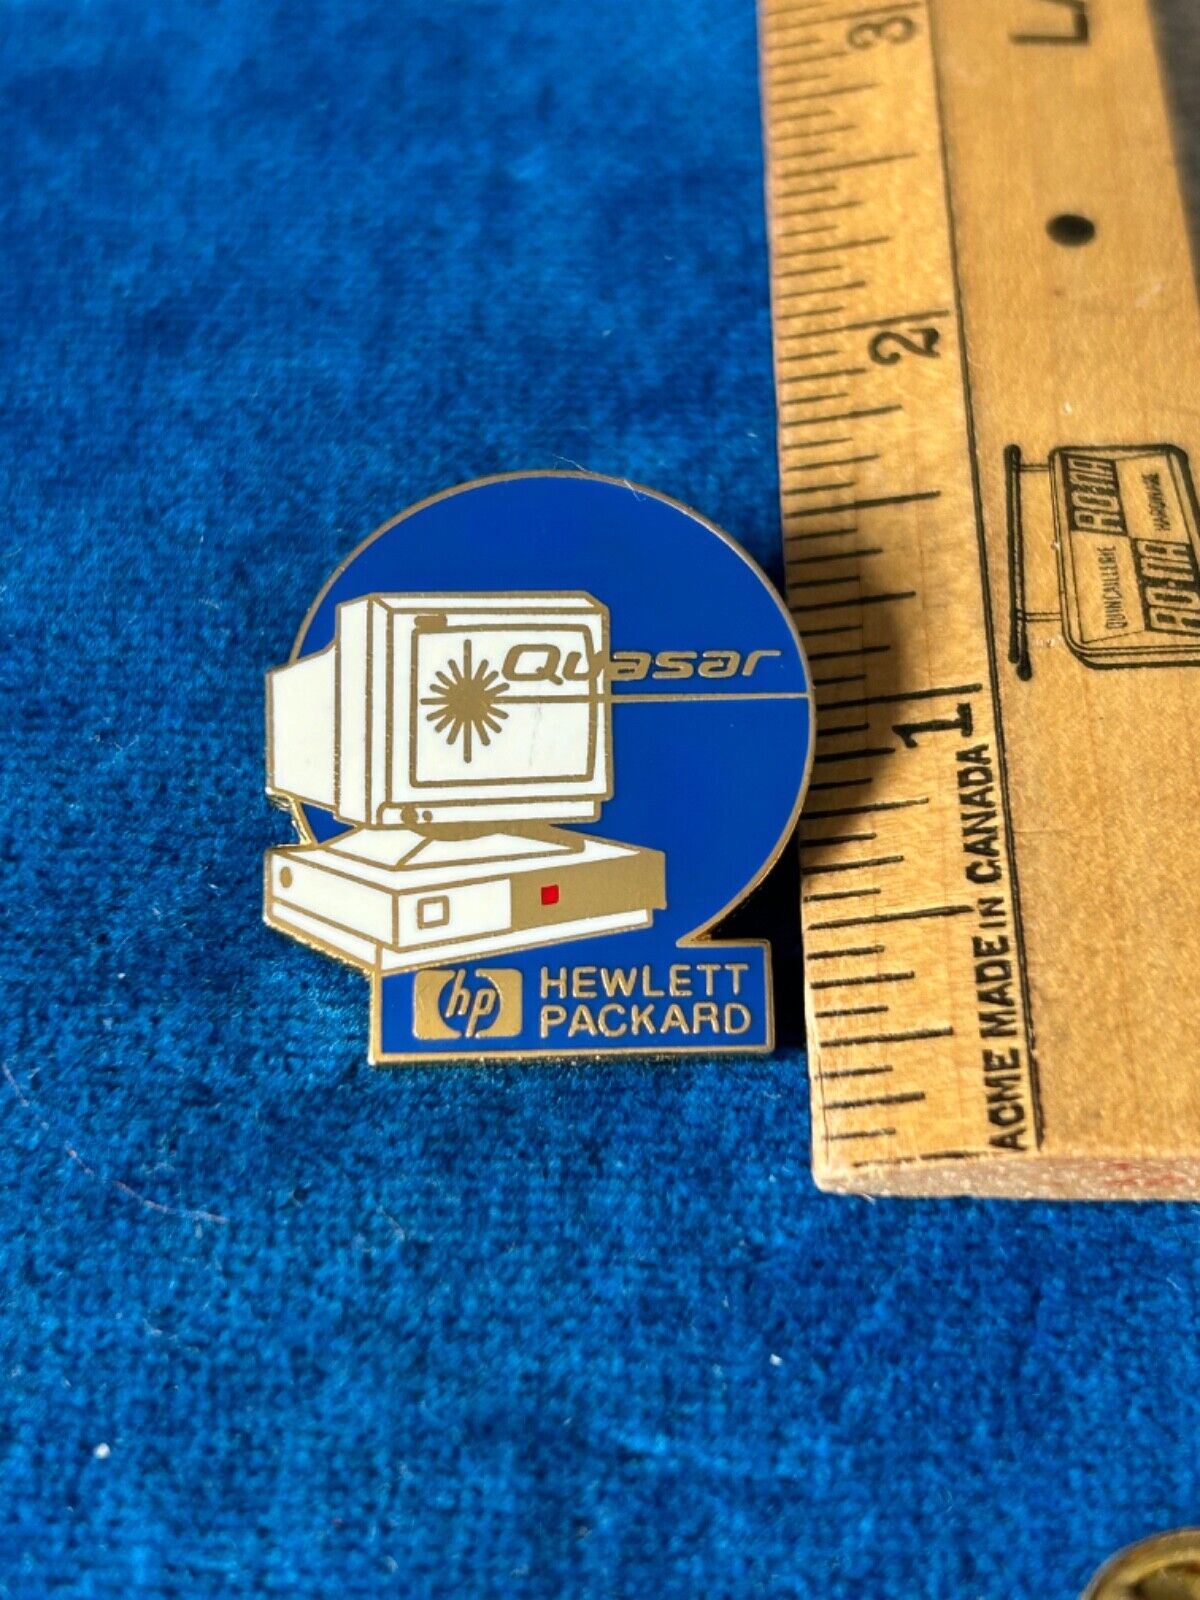 Quasar Hewlett Packard computer advertising Lapel Pin